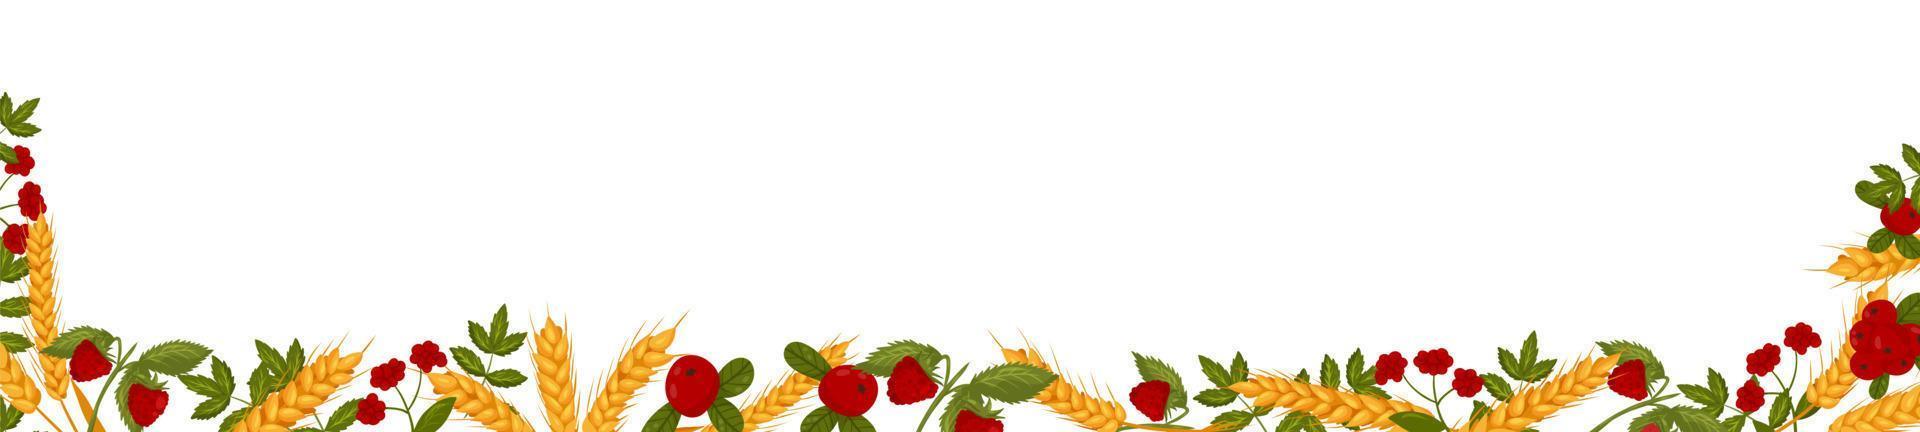 primavera horizontal marco con frambuesa arándanos y trigo sucursales. verano vector bandera